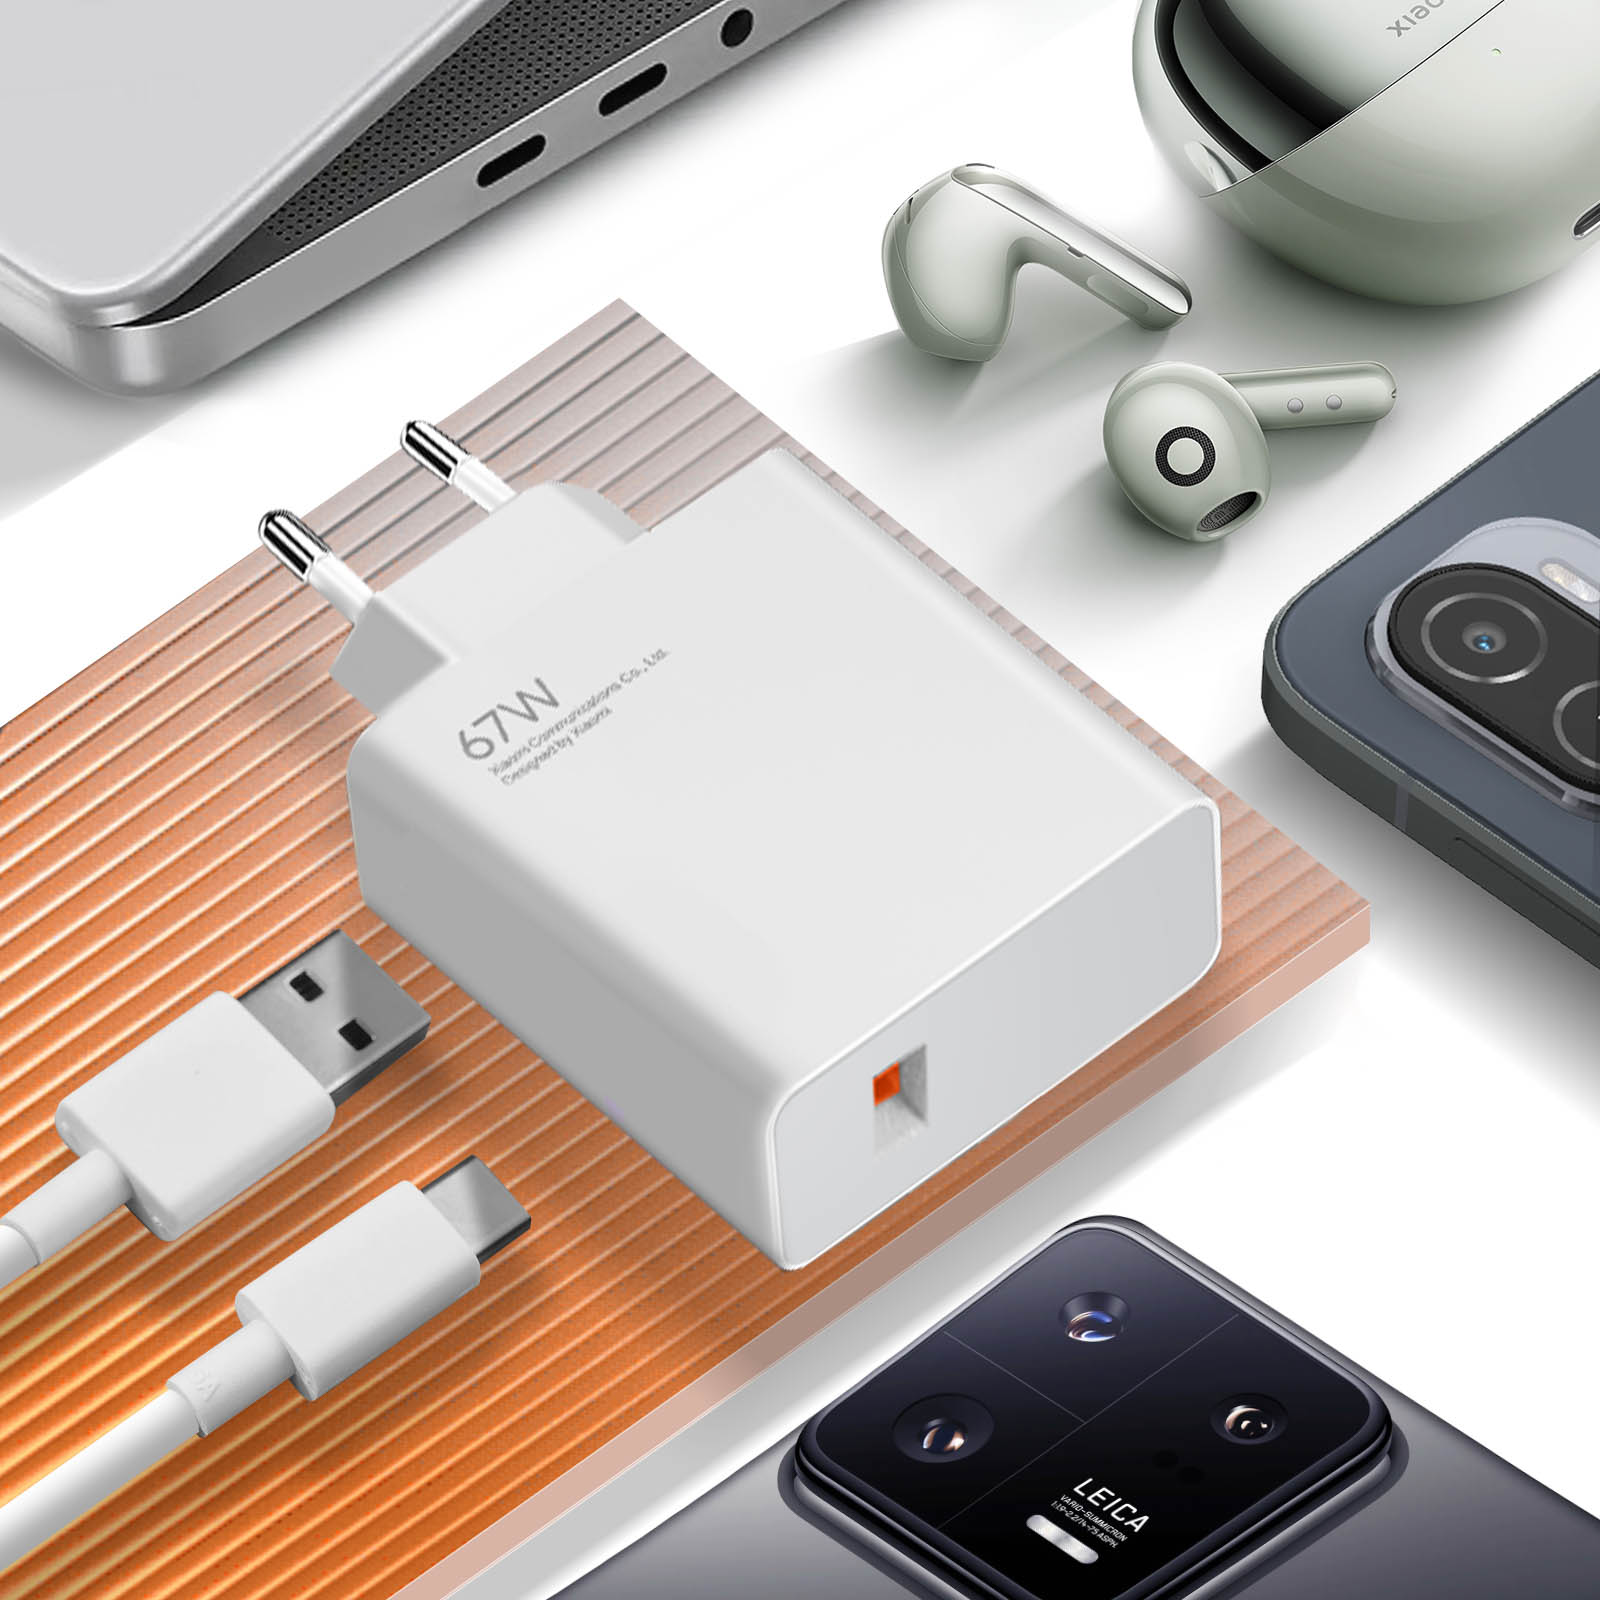 Chargeur secteur d'Origine Xiaomi USB 67W, Câble USB vers USB-C inclus -  Blanc - Français